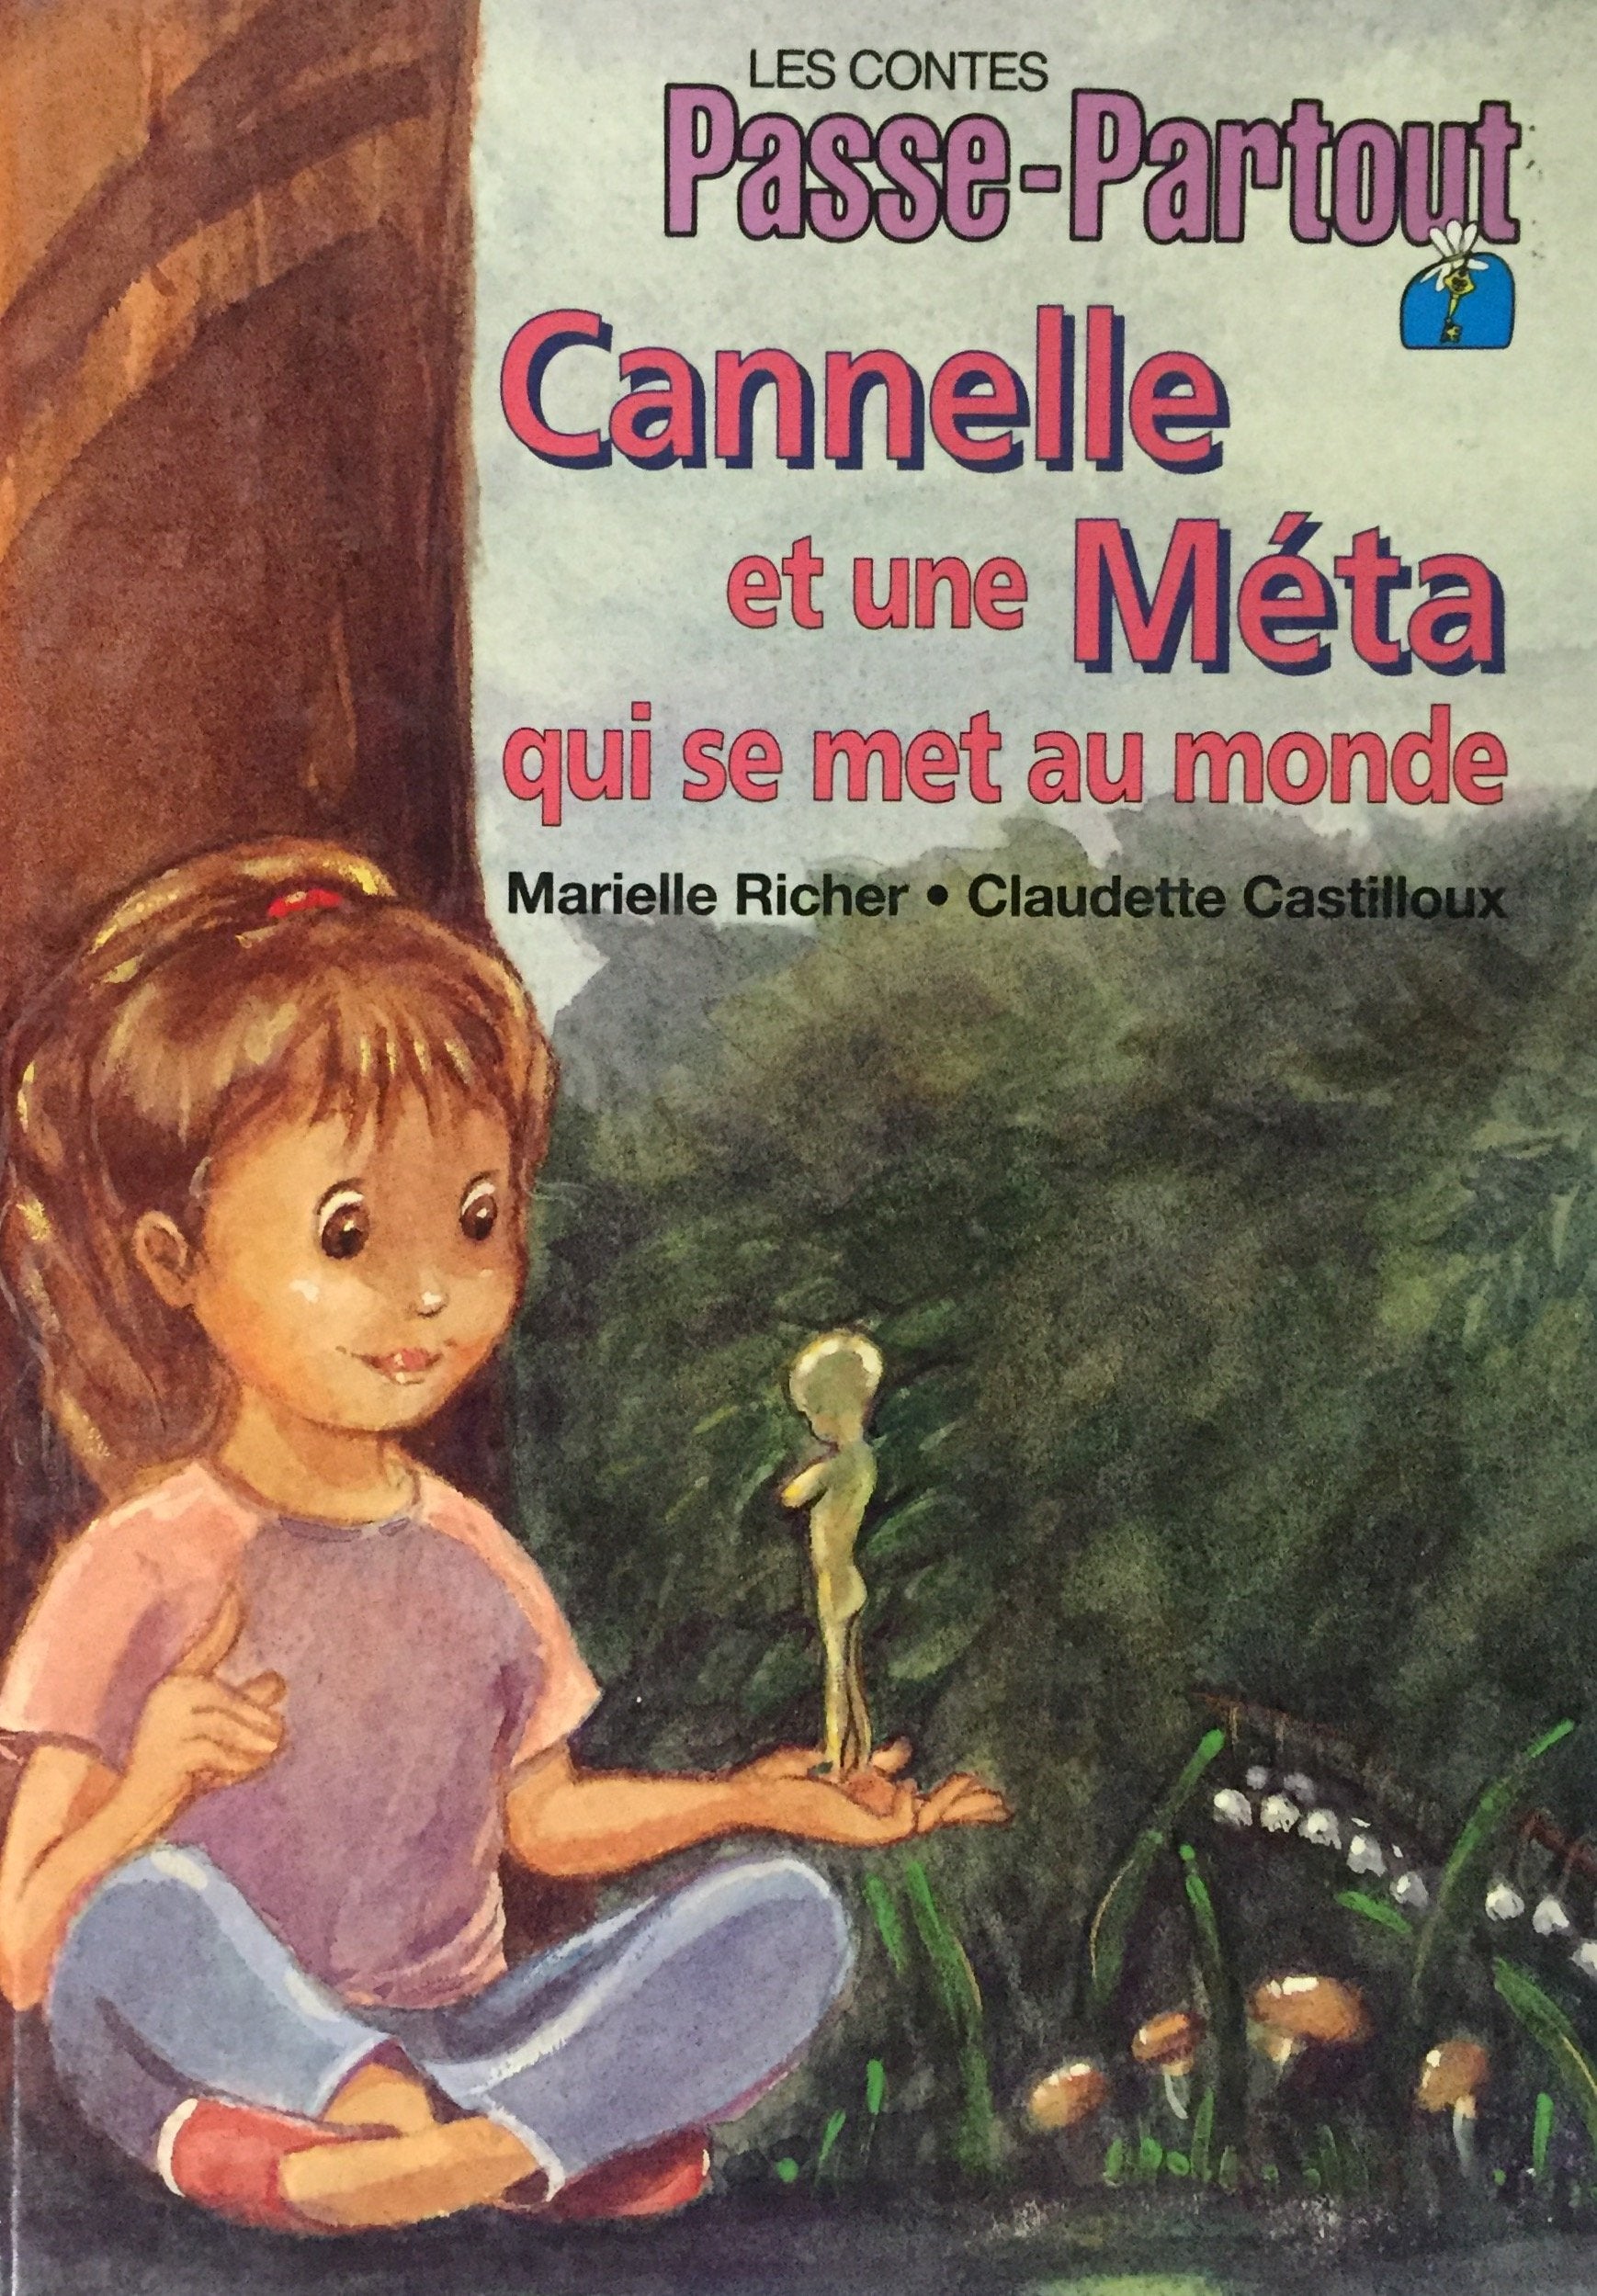 Les contes Passe-Partout : Cannelle et une Méta qui se met au monde - Marielle Richer